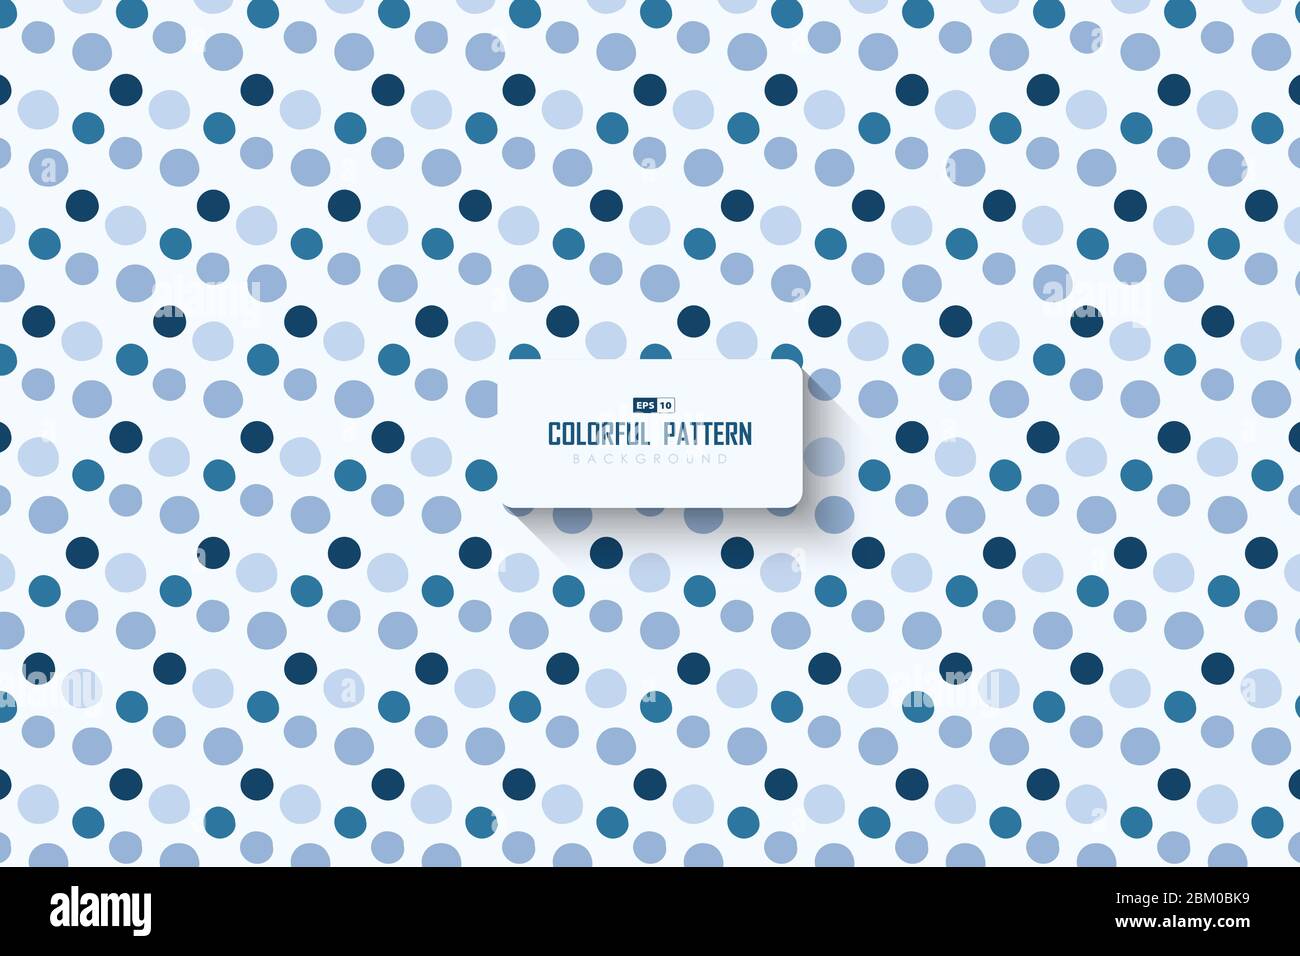 Abstrakt minimal blaue Punkte Muster Design Kunstwerk Hintergrund. Für Anzeige, Poster, Vorlage, Druck. Illustration Vektor eps10 Stock Vektor